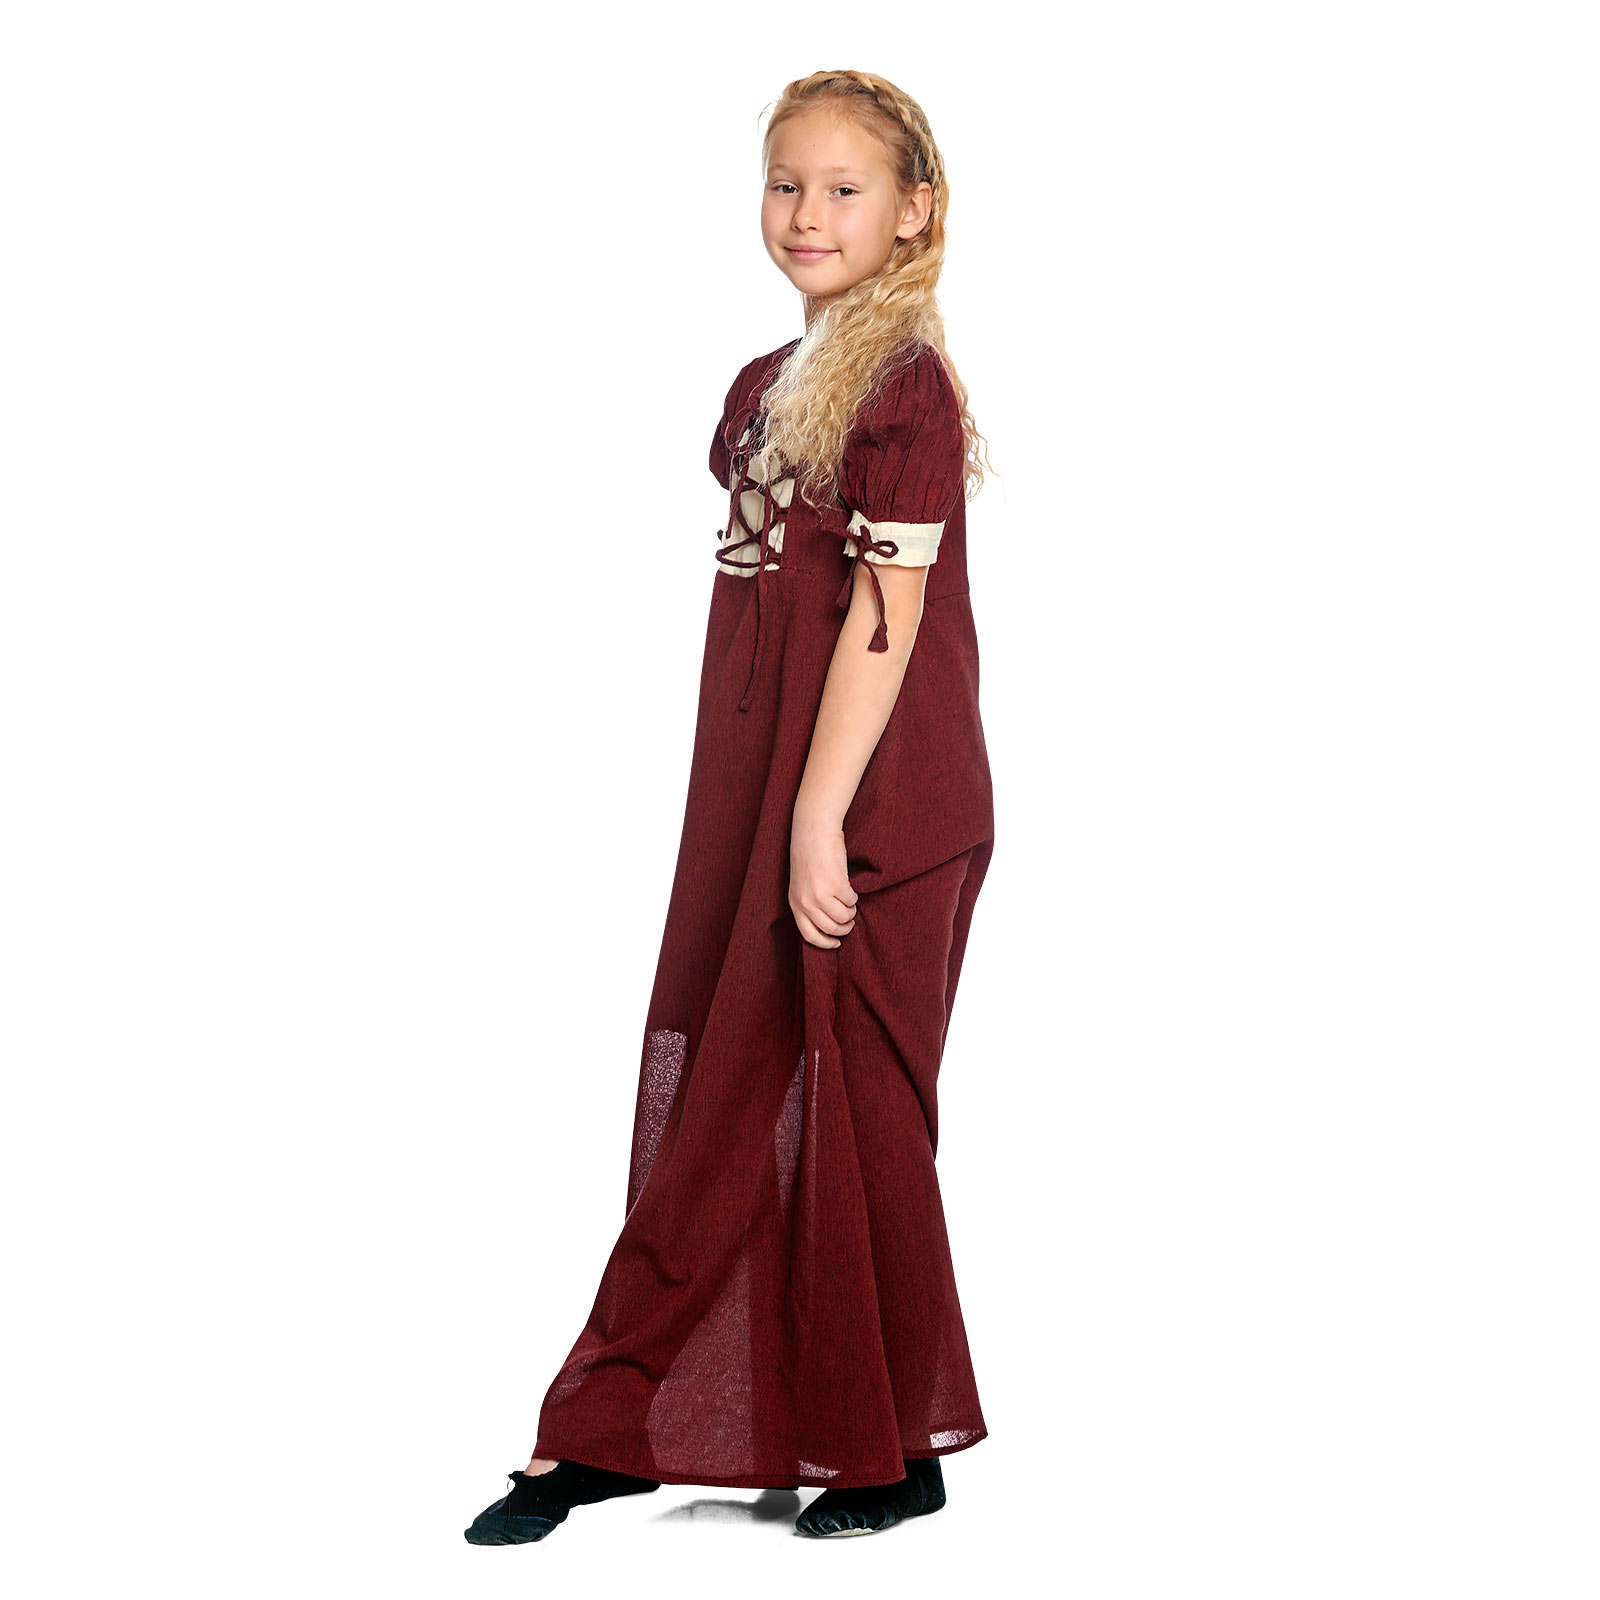 Mittelalter Sommer Kleid Kinder rot beige